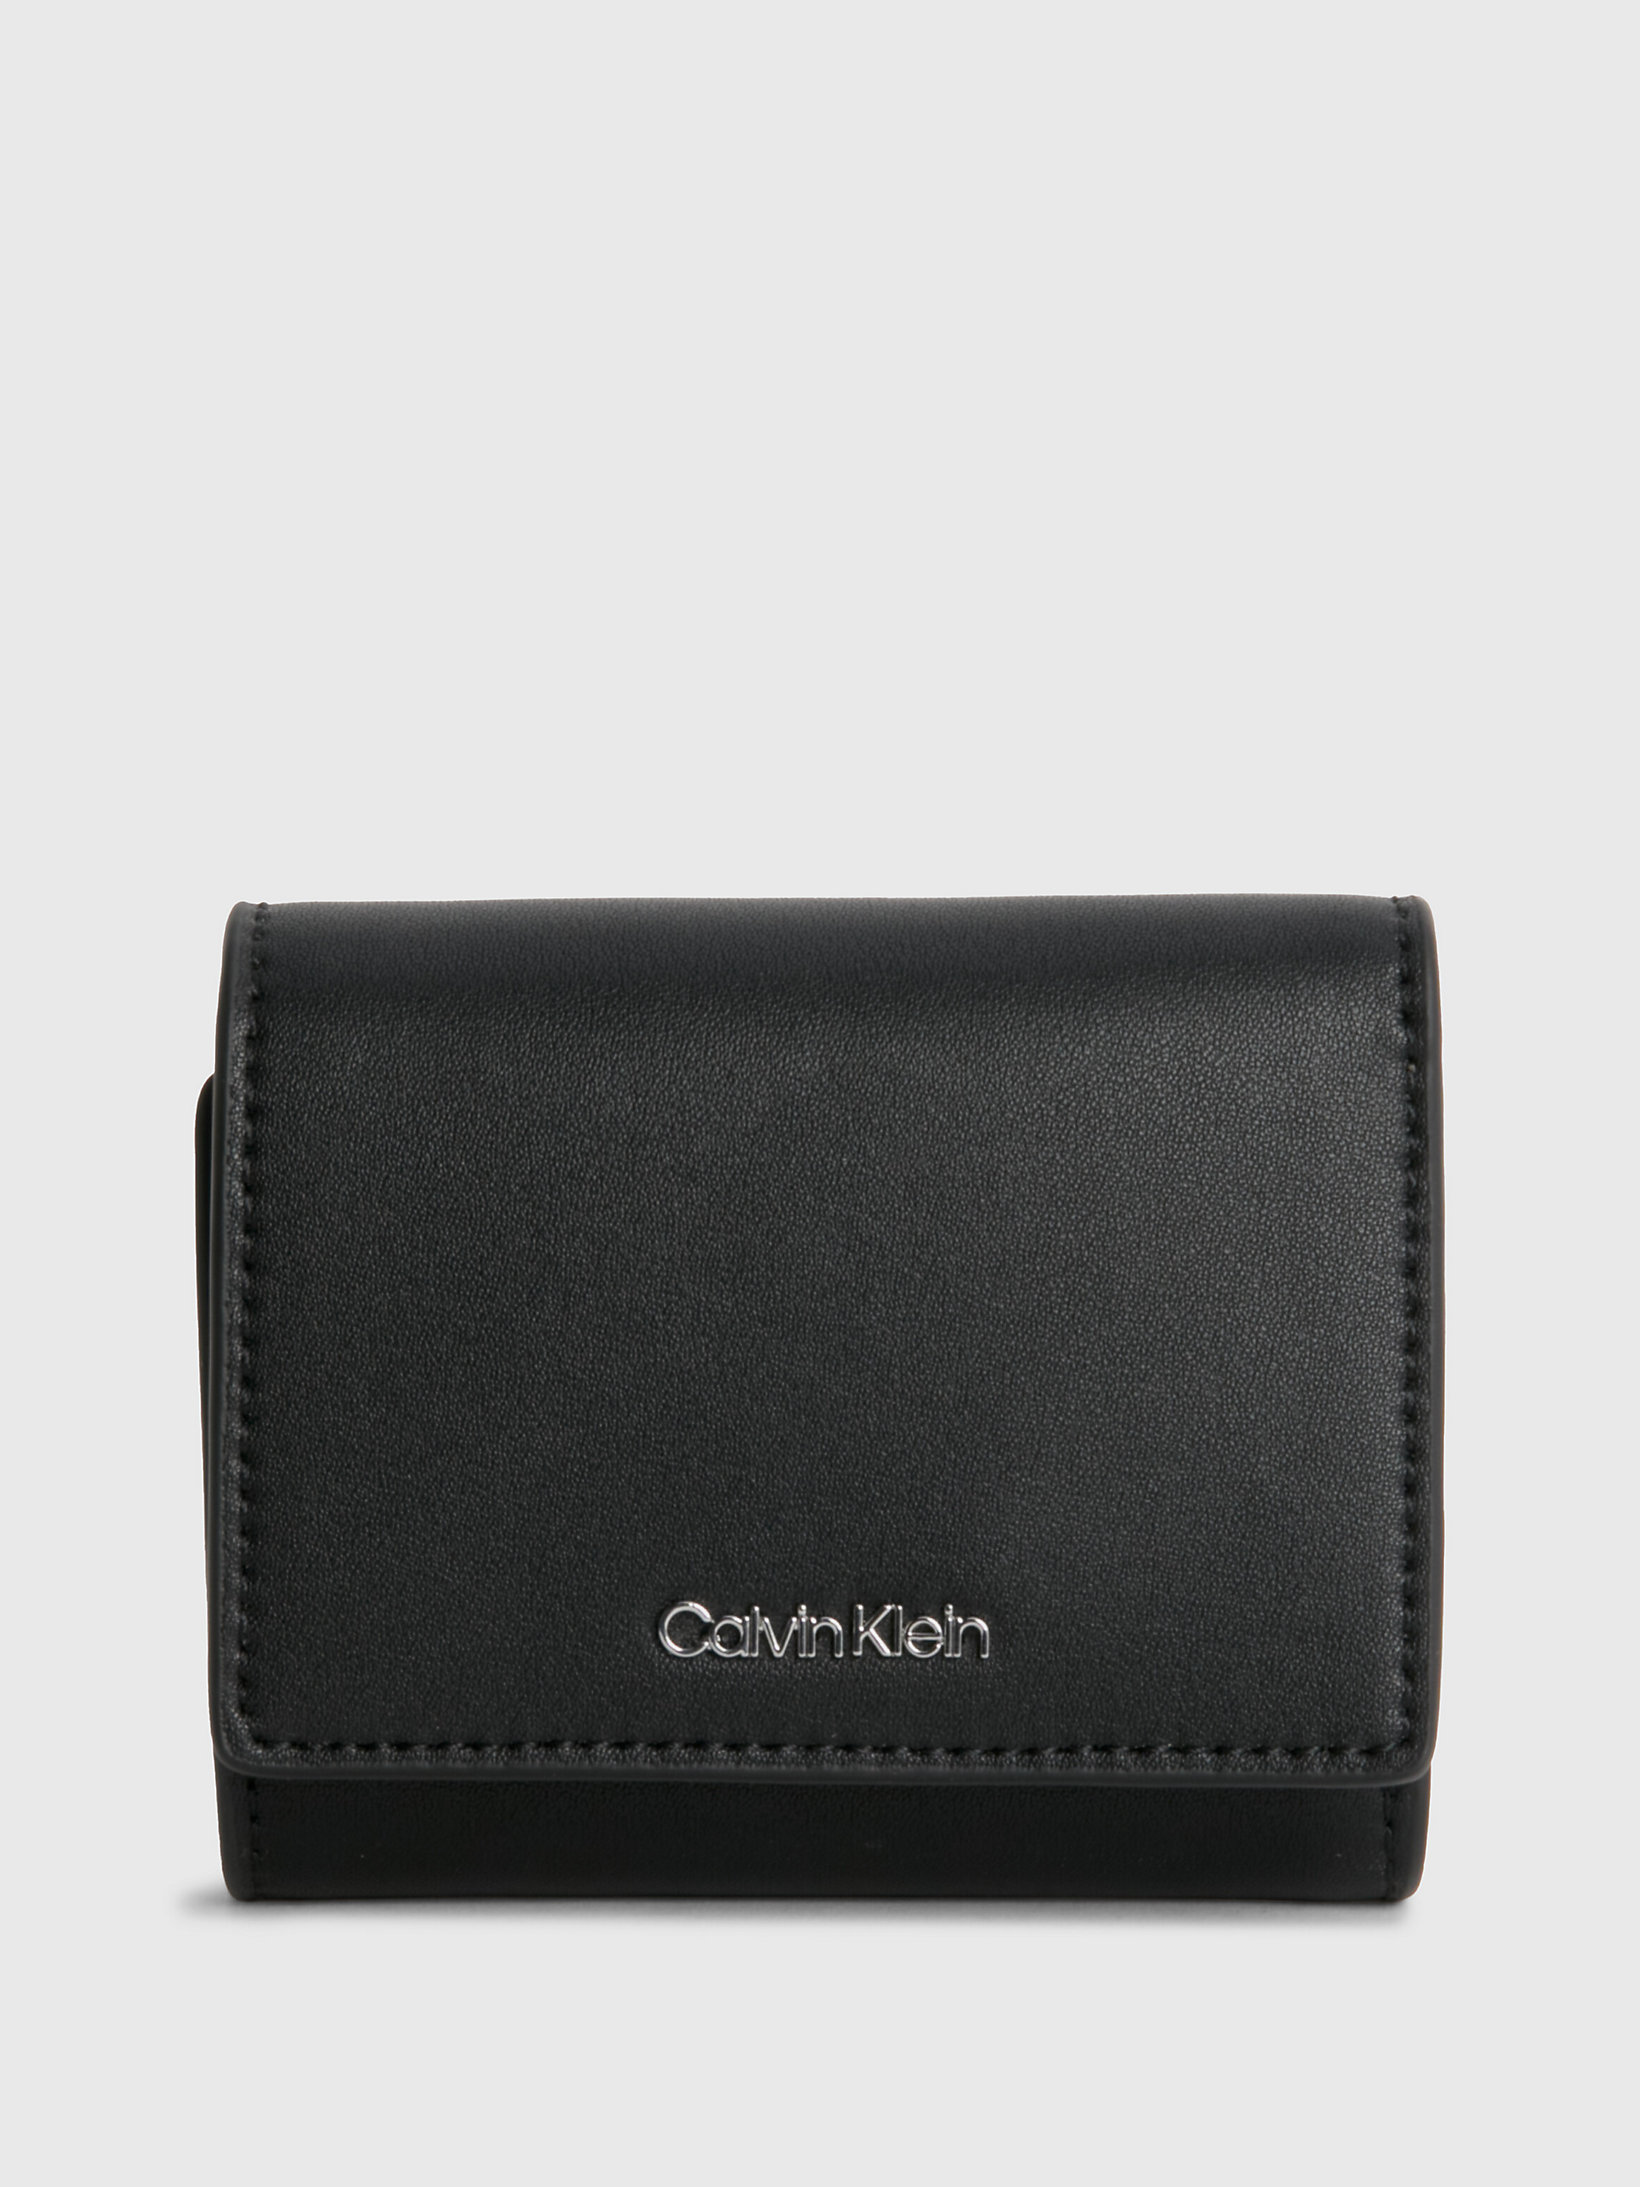 CK Black > Dreifach Faltbares Kleines Portemonnaie Aus Recyceltem Material > undefined Damen - Calvin Klein